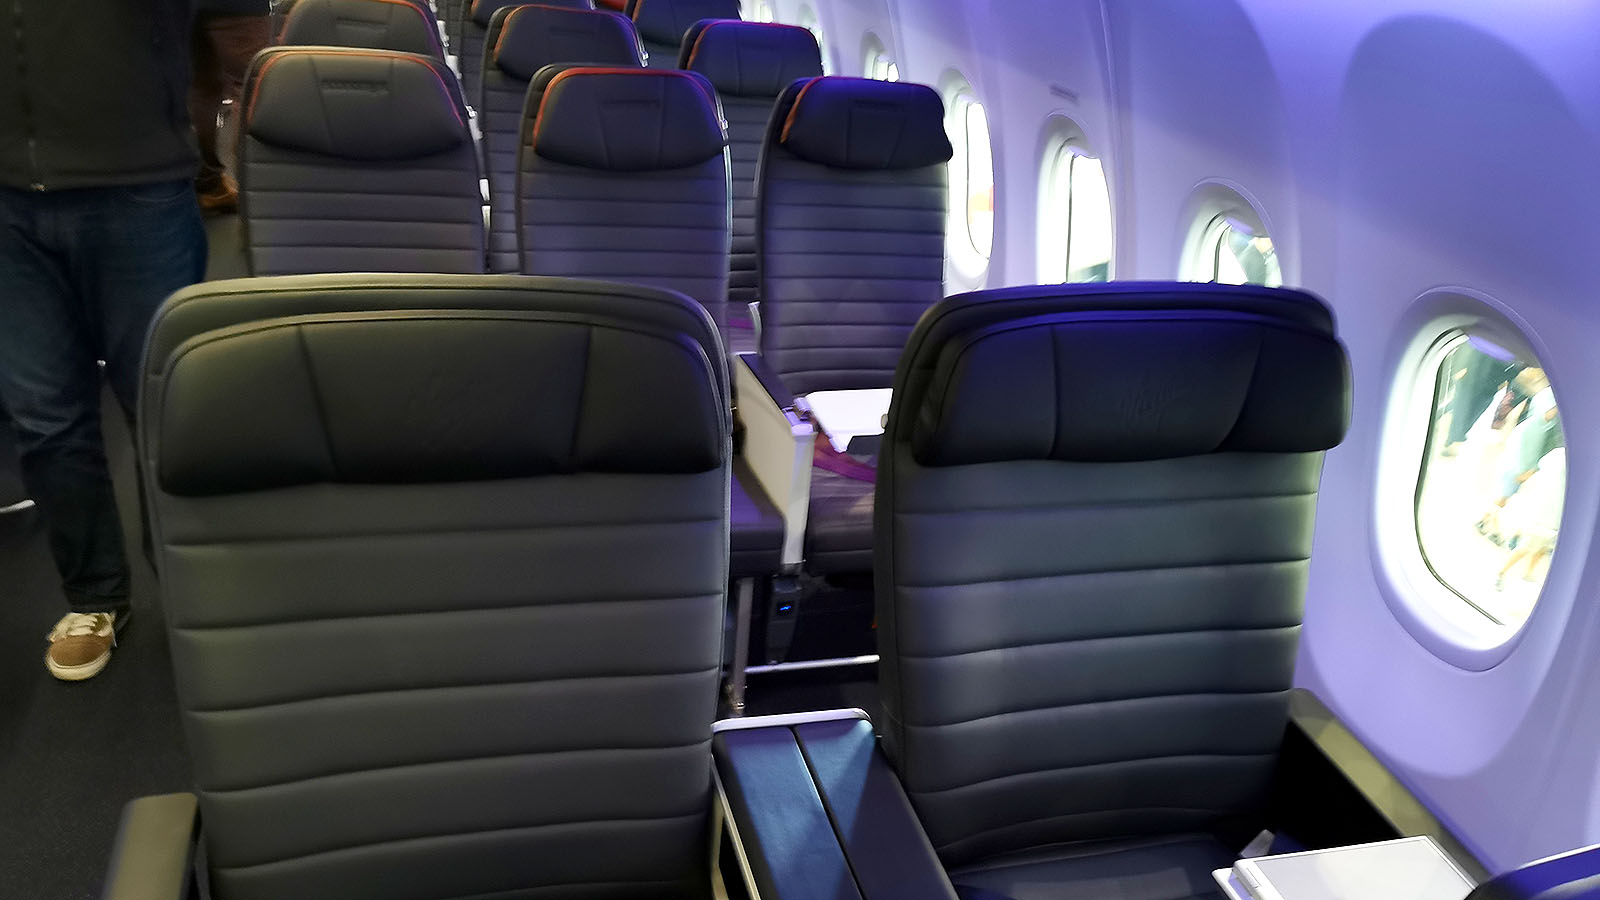 Virgin Australia Boeing 737 MAX 8 Business Class headrest